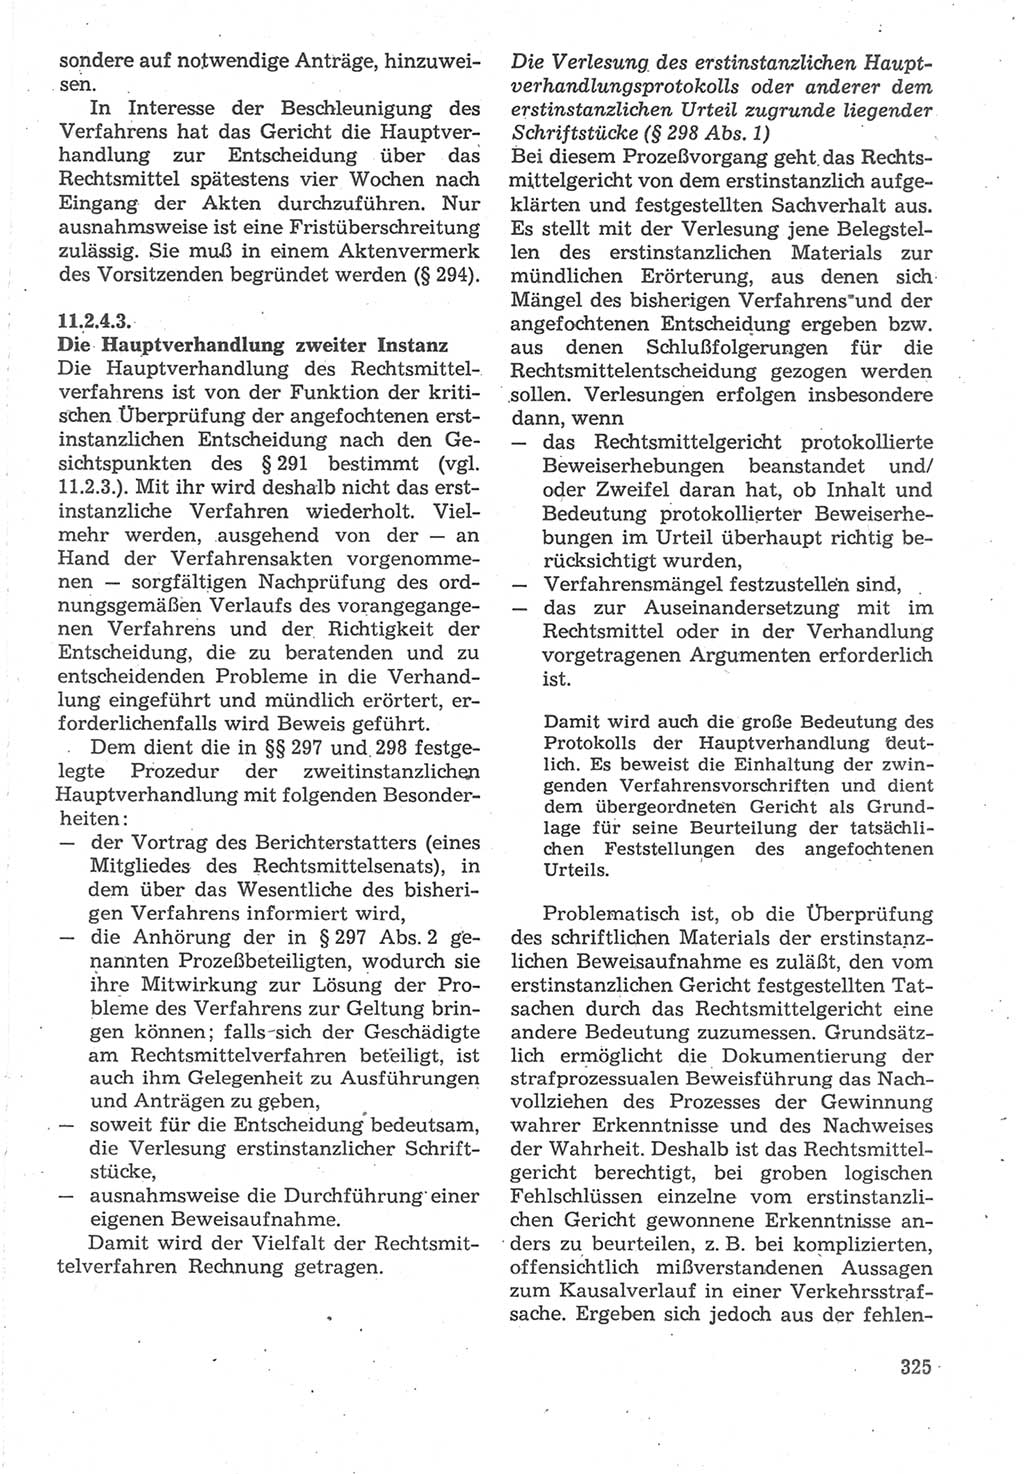 Strafverfahrensrecht [Deutsche Demokratische Republik (DDR)], Lehrbuch 1987, Seite 325 (Strafverf.-R. DDR Lb. 1987, S. 325)